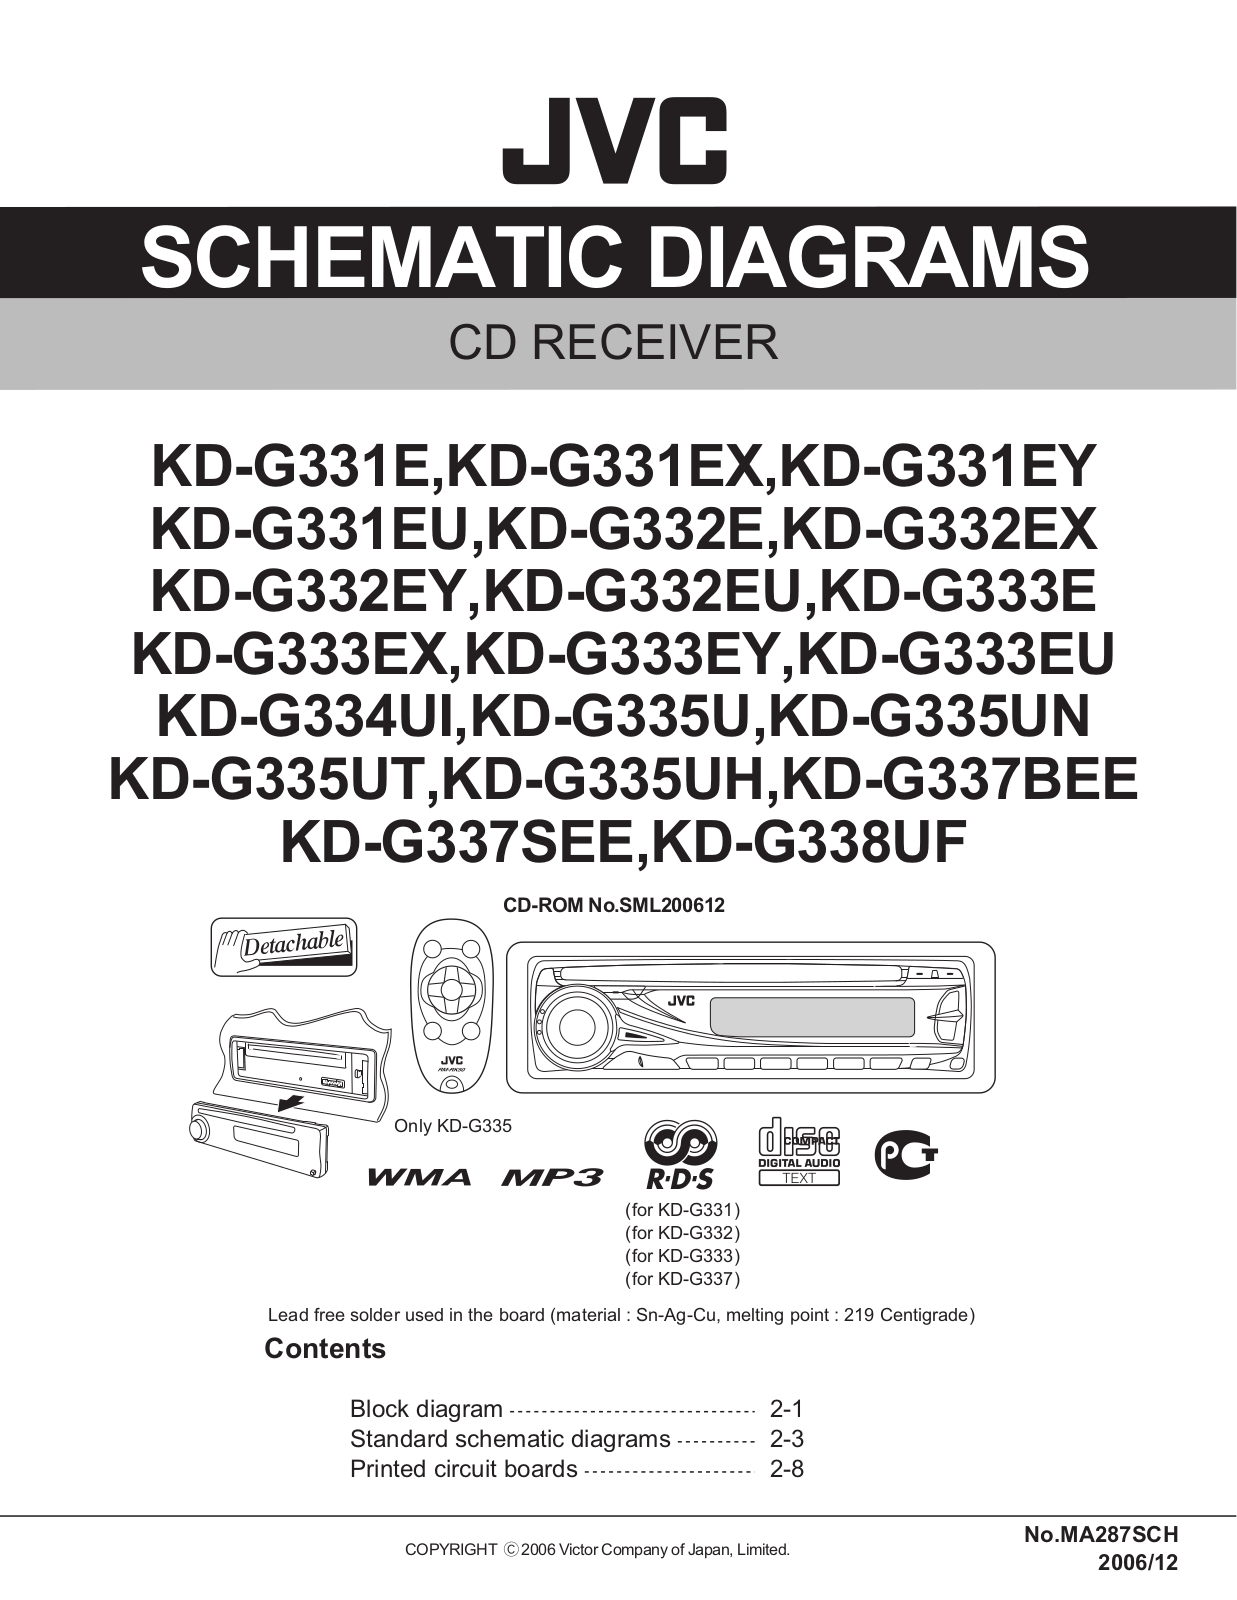 JVC KDG-331 Schematic